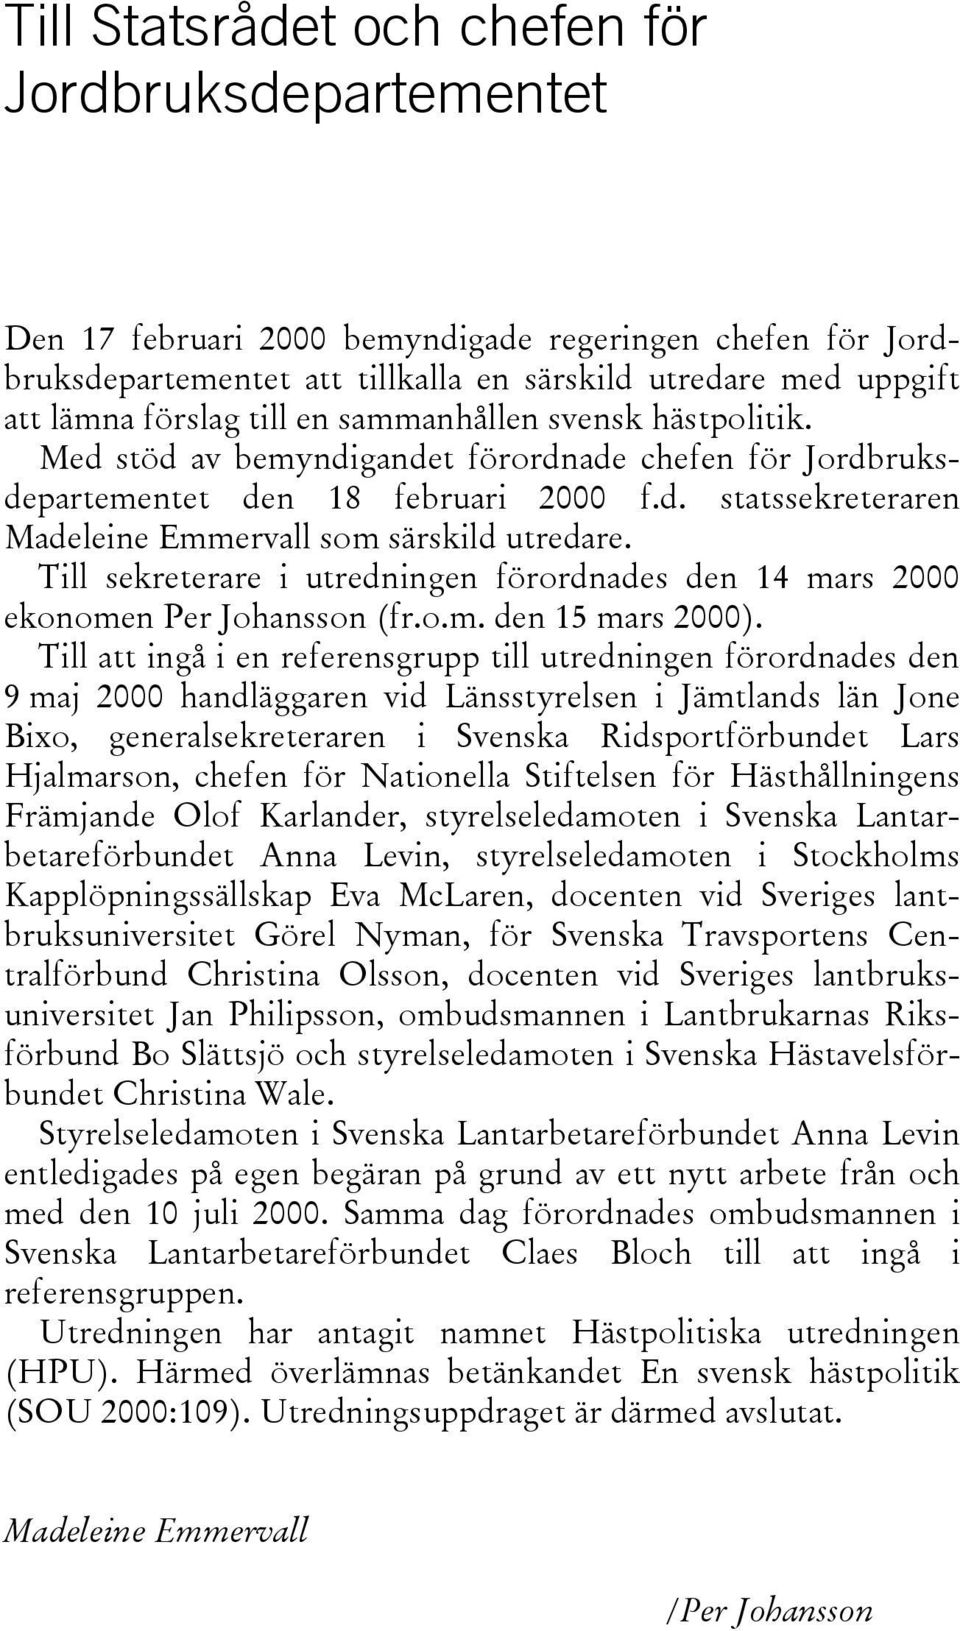 Till sekreterare i utredningen förordnades den 14 mars 2000 ekonomen Per Johansson (fr.o.m. den 15 mars 2000).